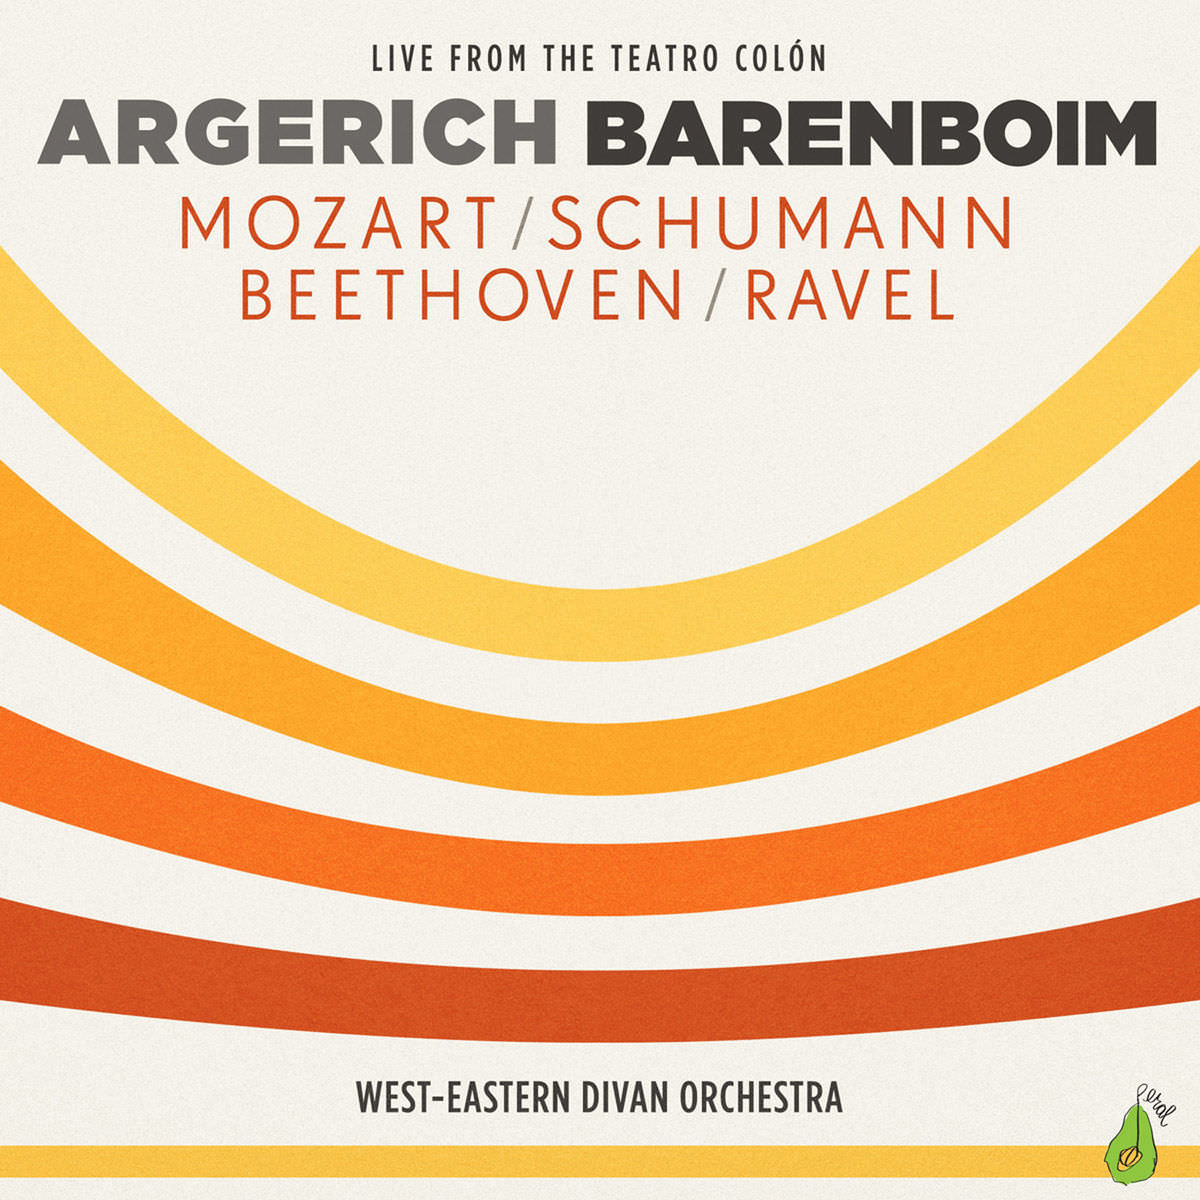 Martha Argerich - Argerich & Barenboim: Mozart / Schumann / Beethoven / Ravel (2015) [FLAC 24bit/96kHz]